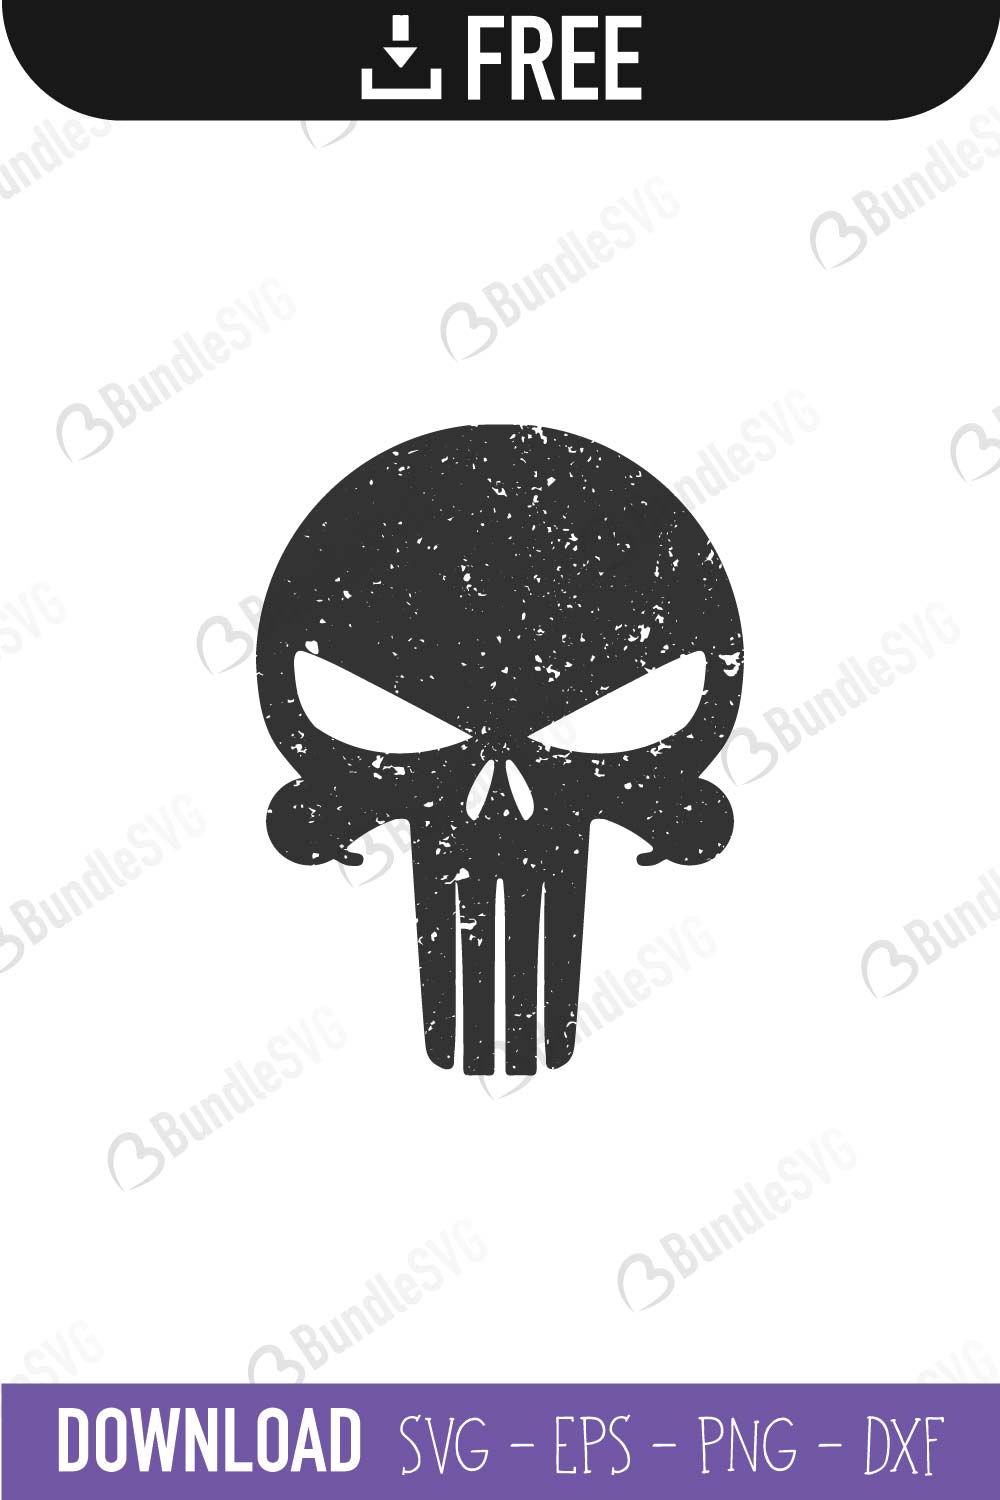 Download Punisher Skull SVG Cut Files Free Download | BundleSVG